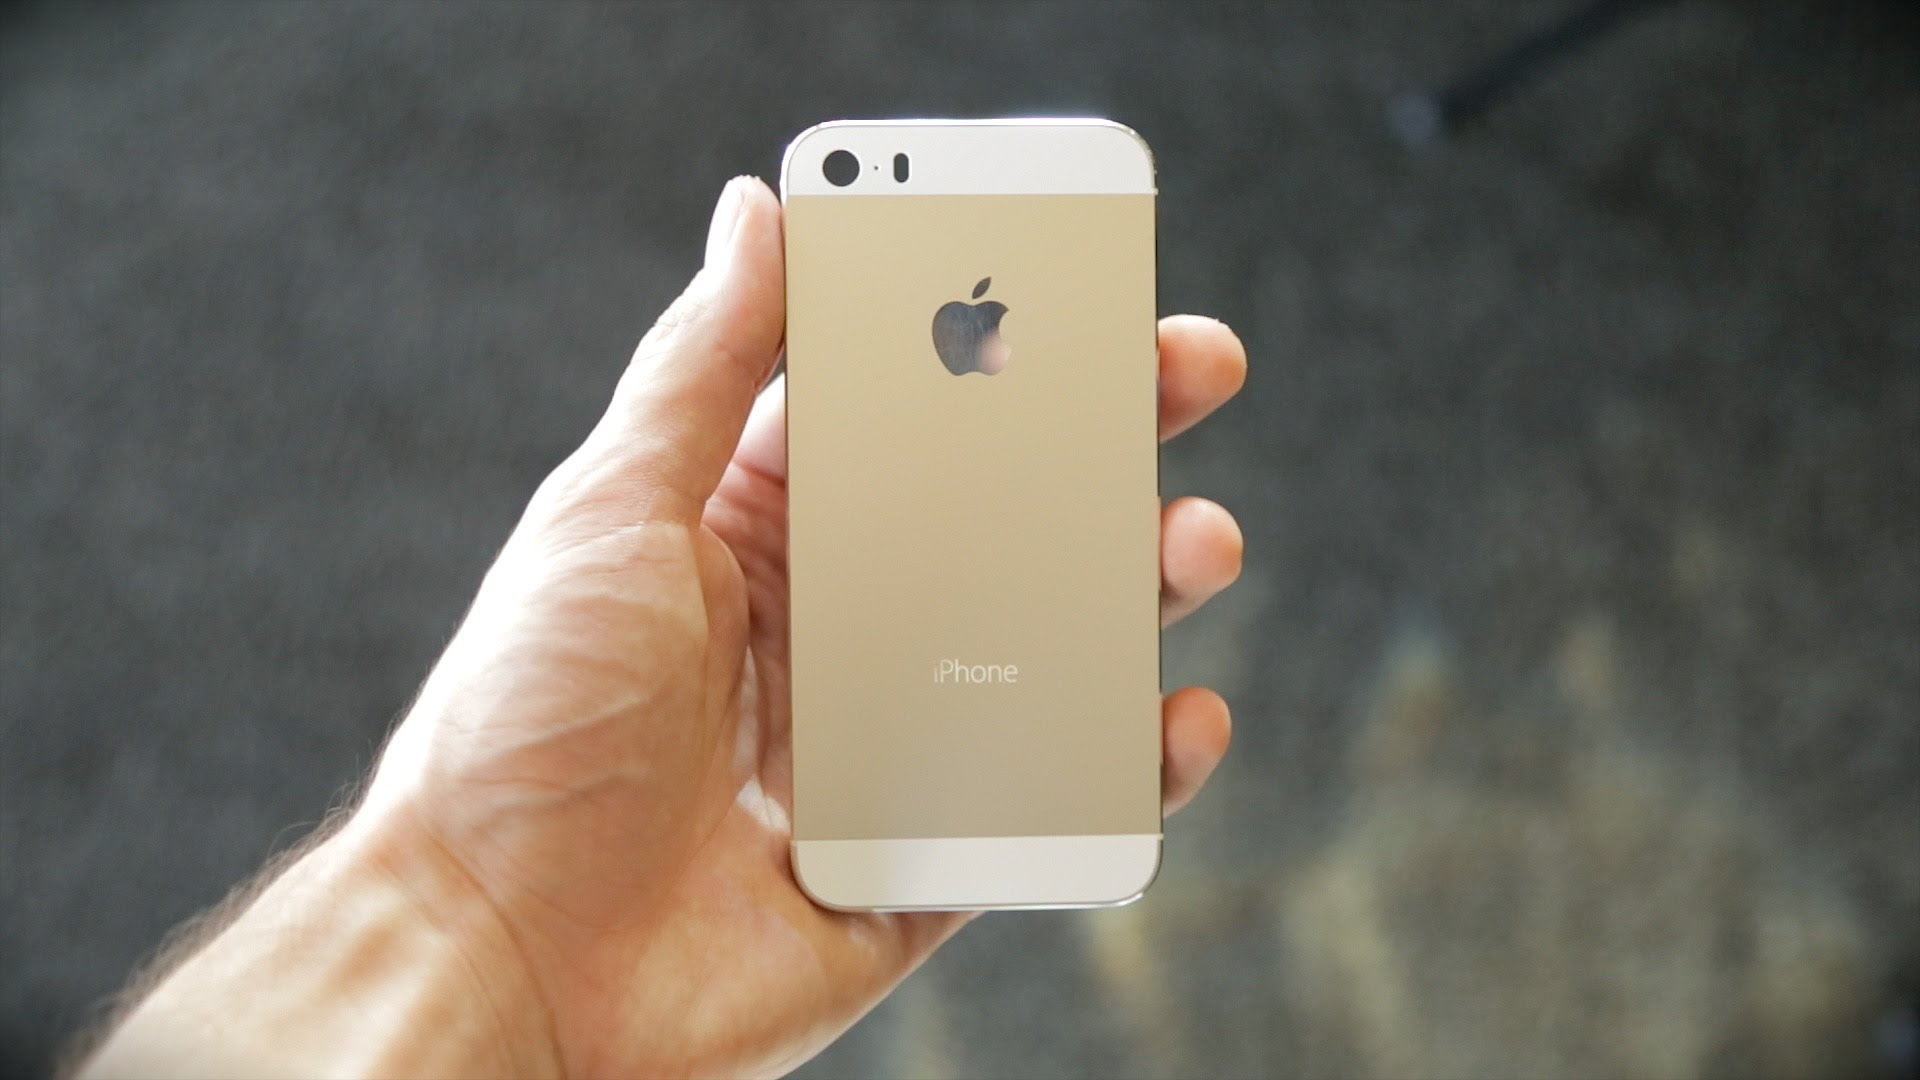 Zbohom, iPhone 5! Príchod iOS 11 predurčil osud tohto modelu